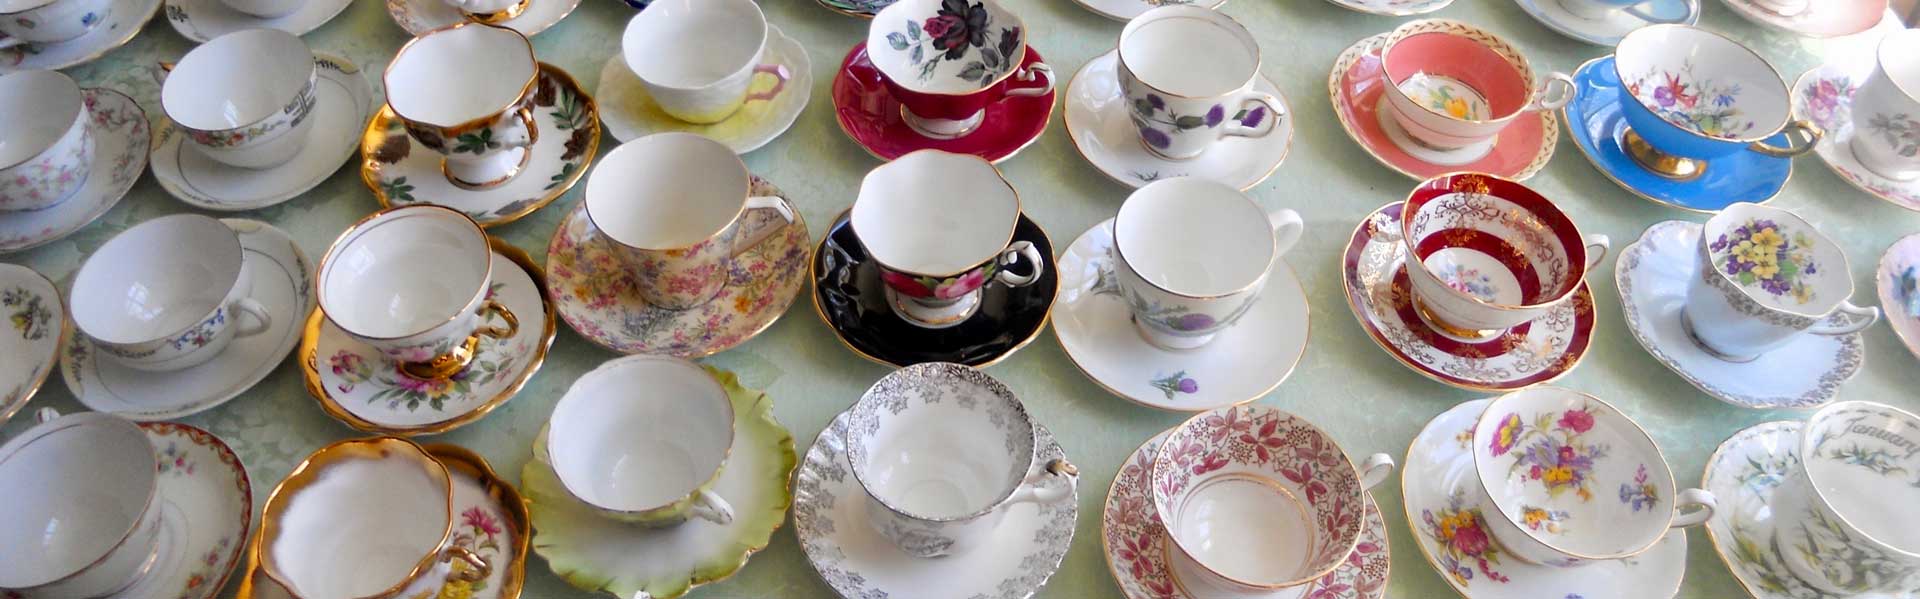 Teas and Teacups